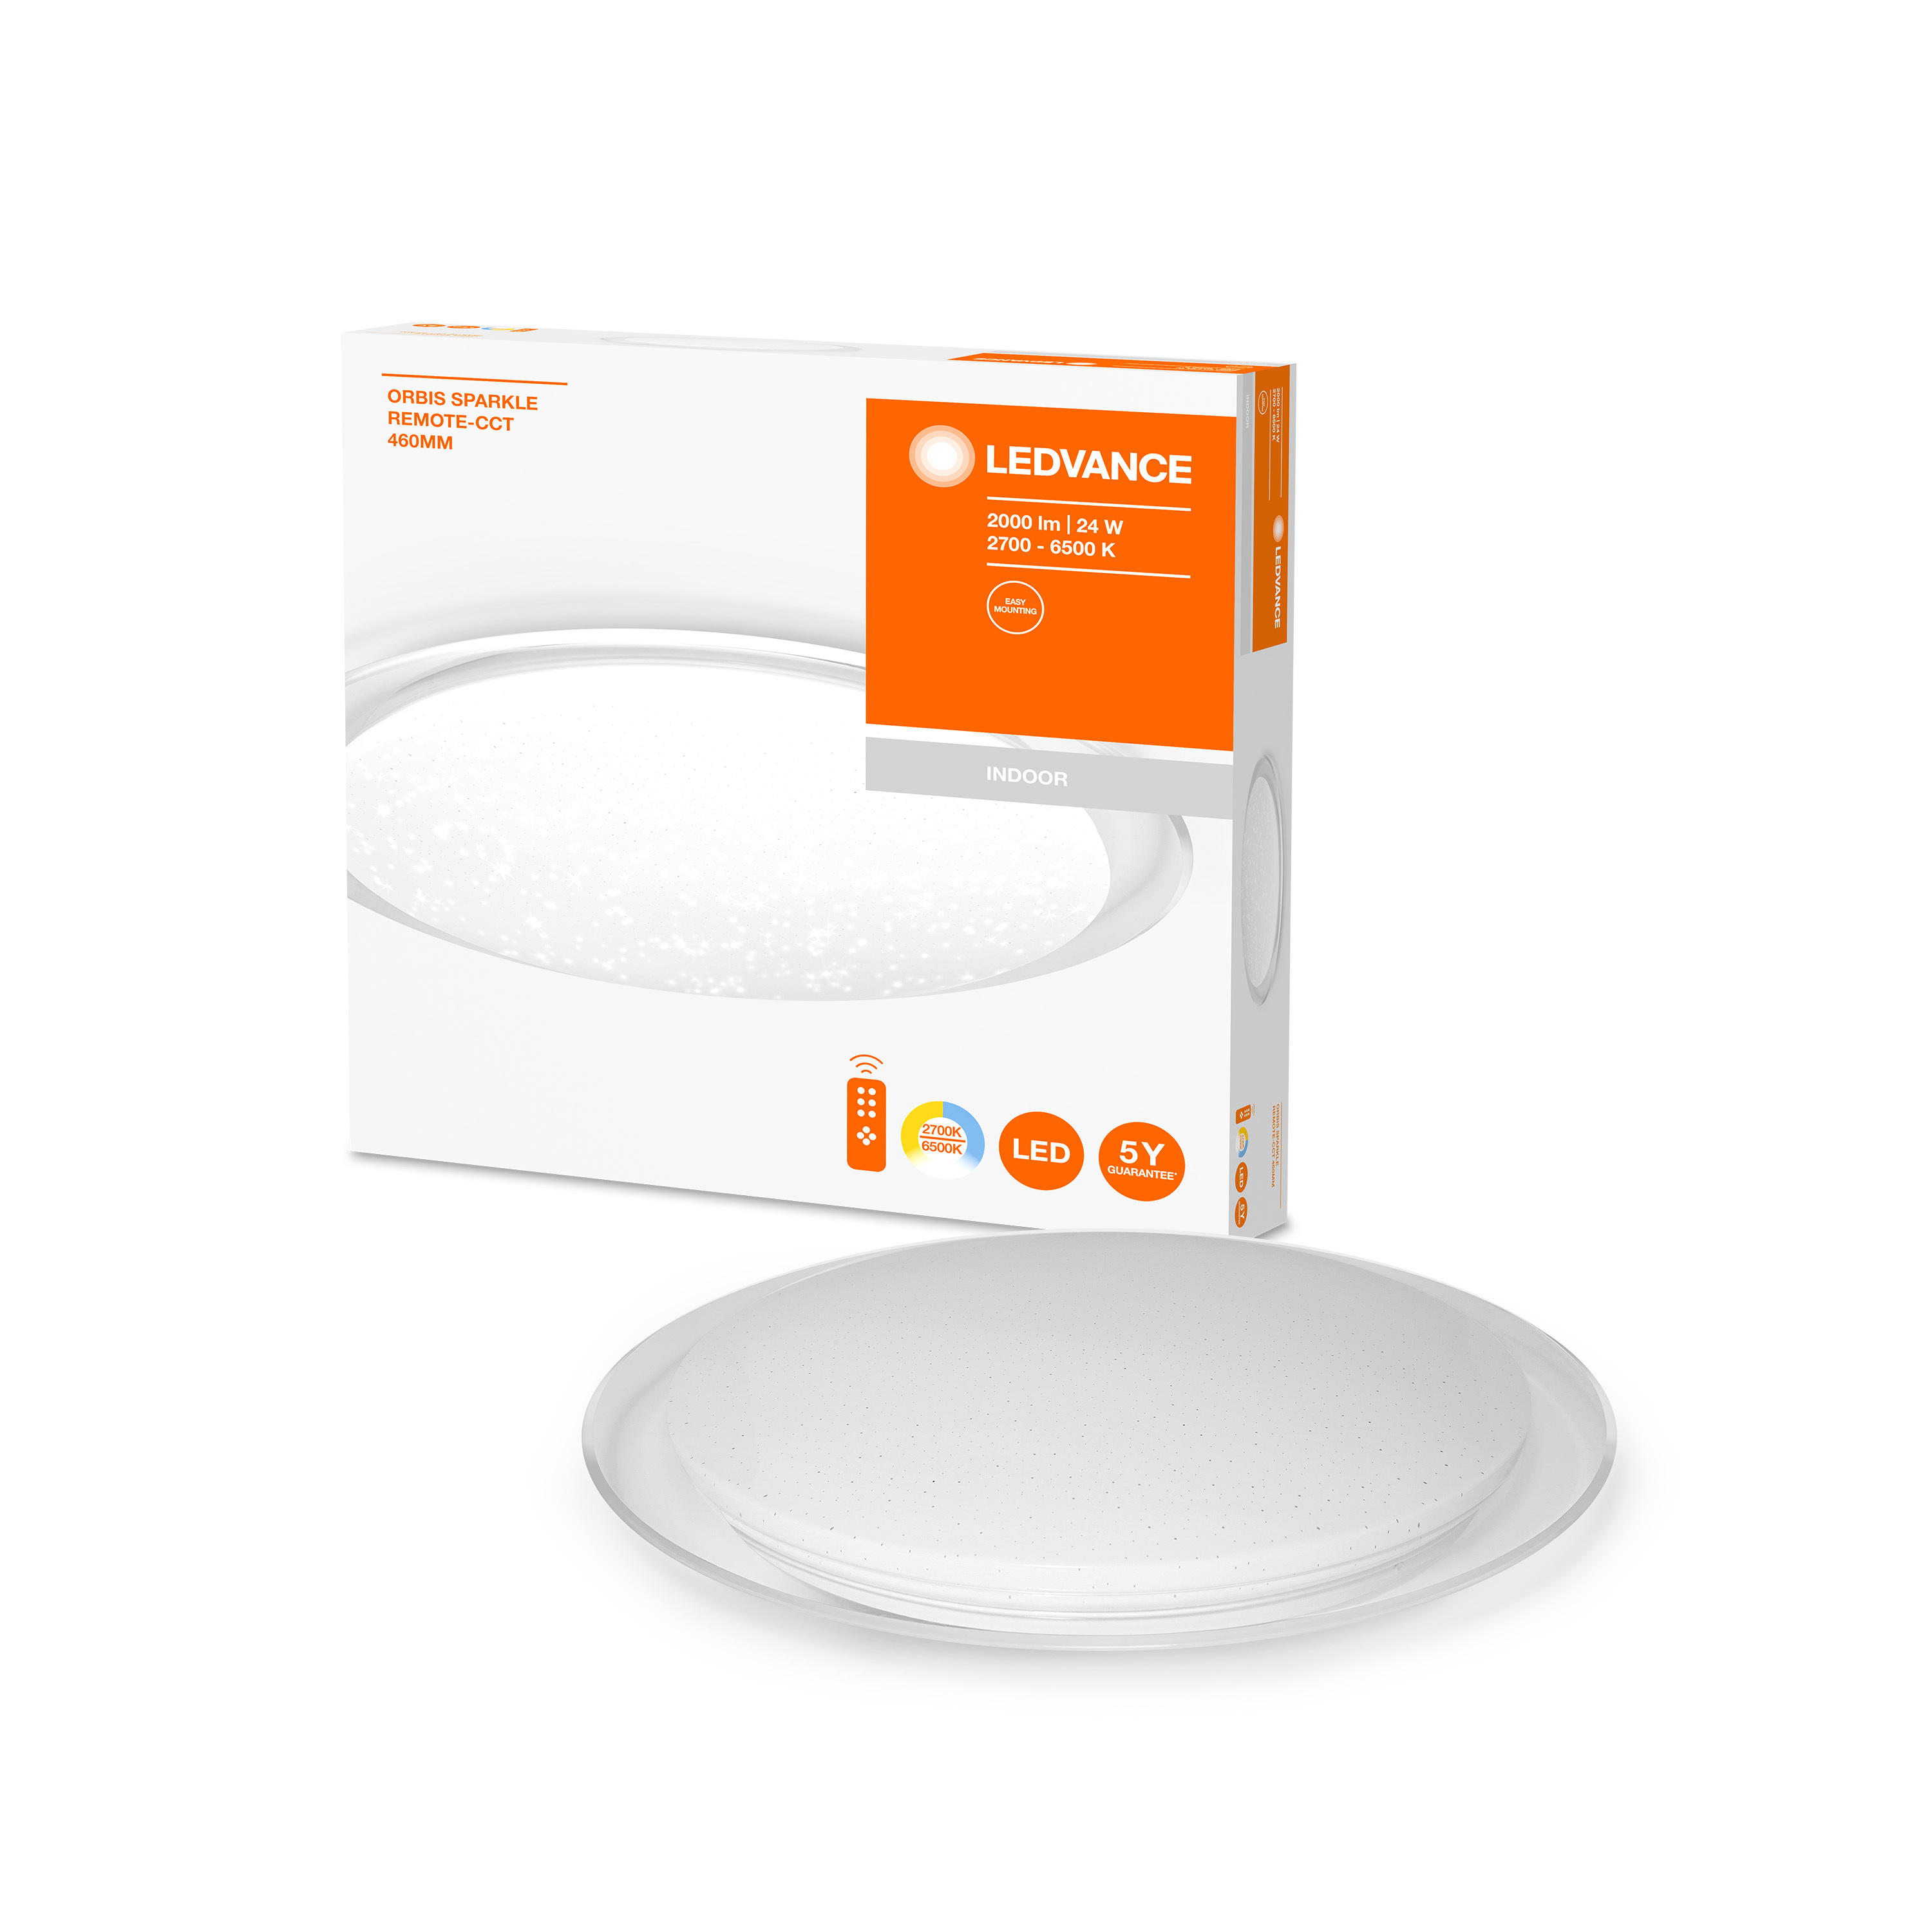 LED-DECKENLEUCHTE Orbis Sparkle  - Weiß, Basics, Kunststoff/Metall (54,6/51,1/52,7cm) - Ledvance